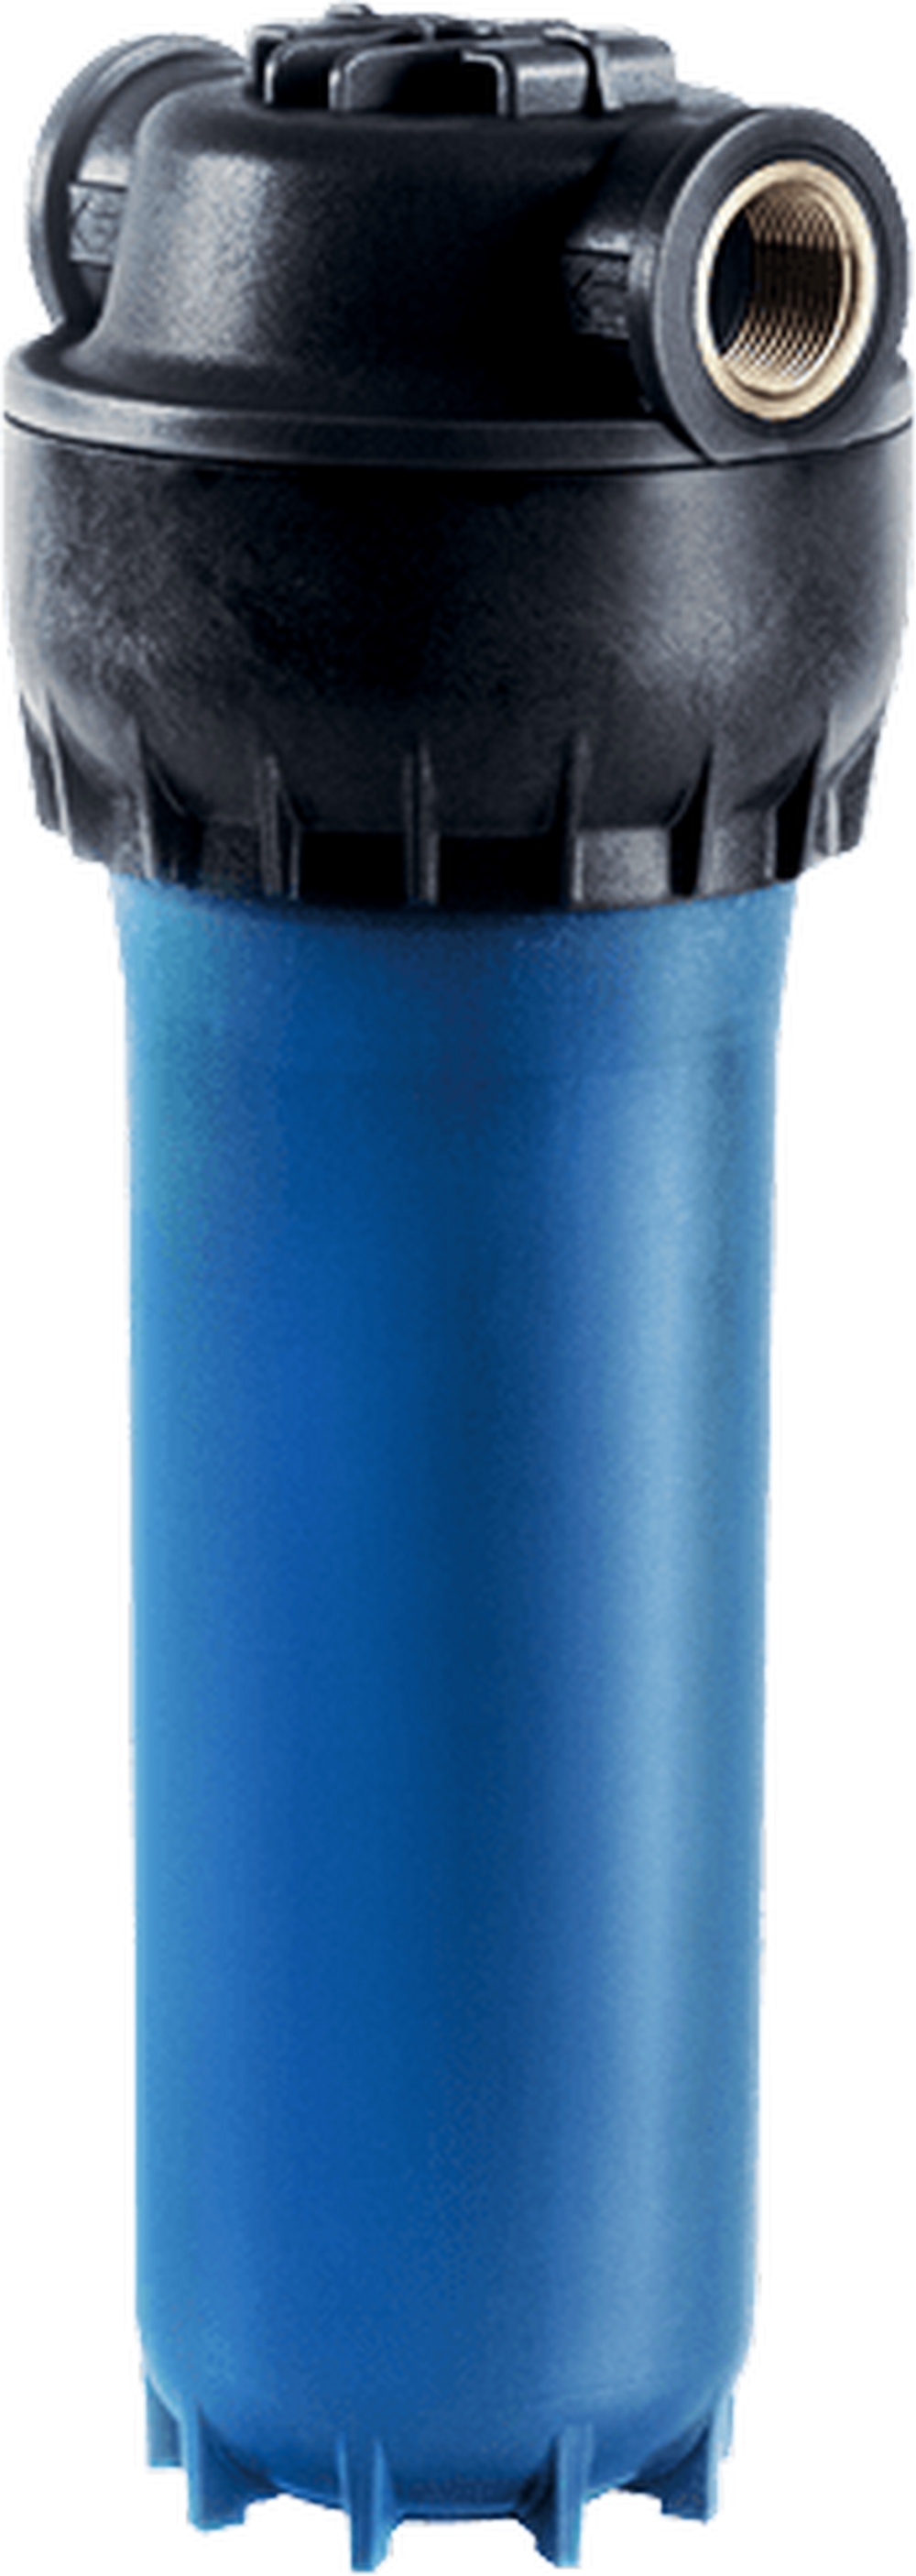 Цена магистральный фильтр Aquaphor армированный для холодной воды в Кривом Роге